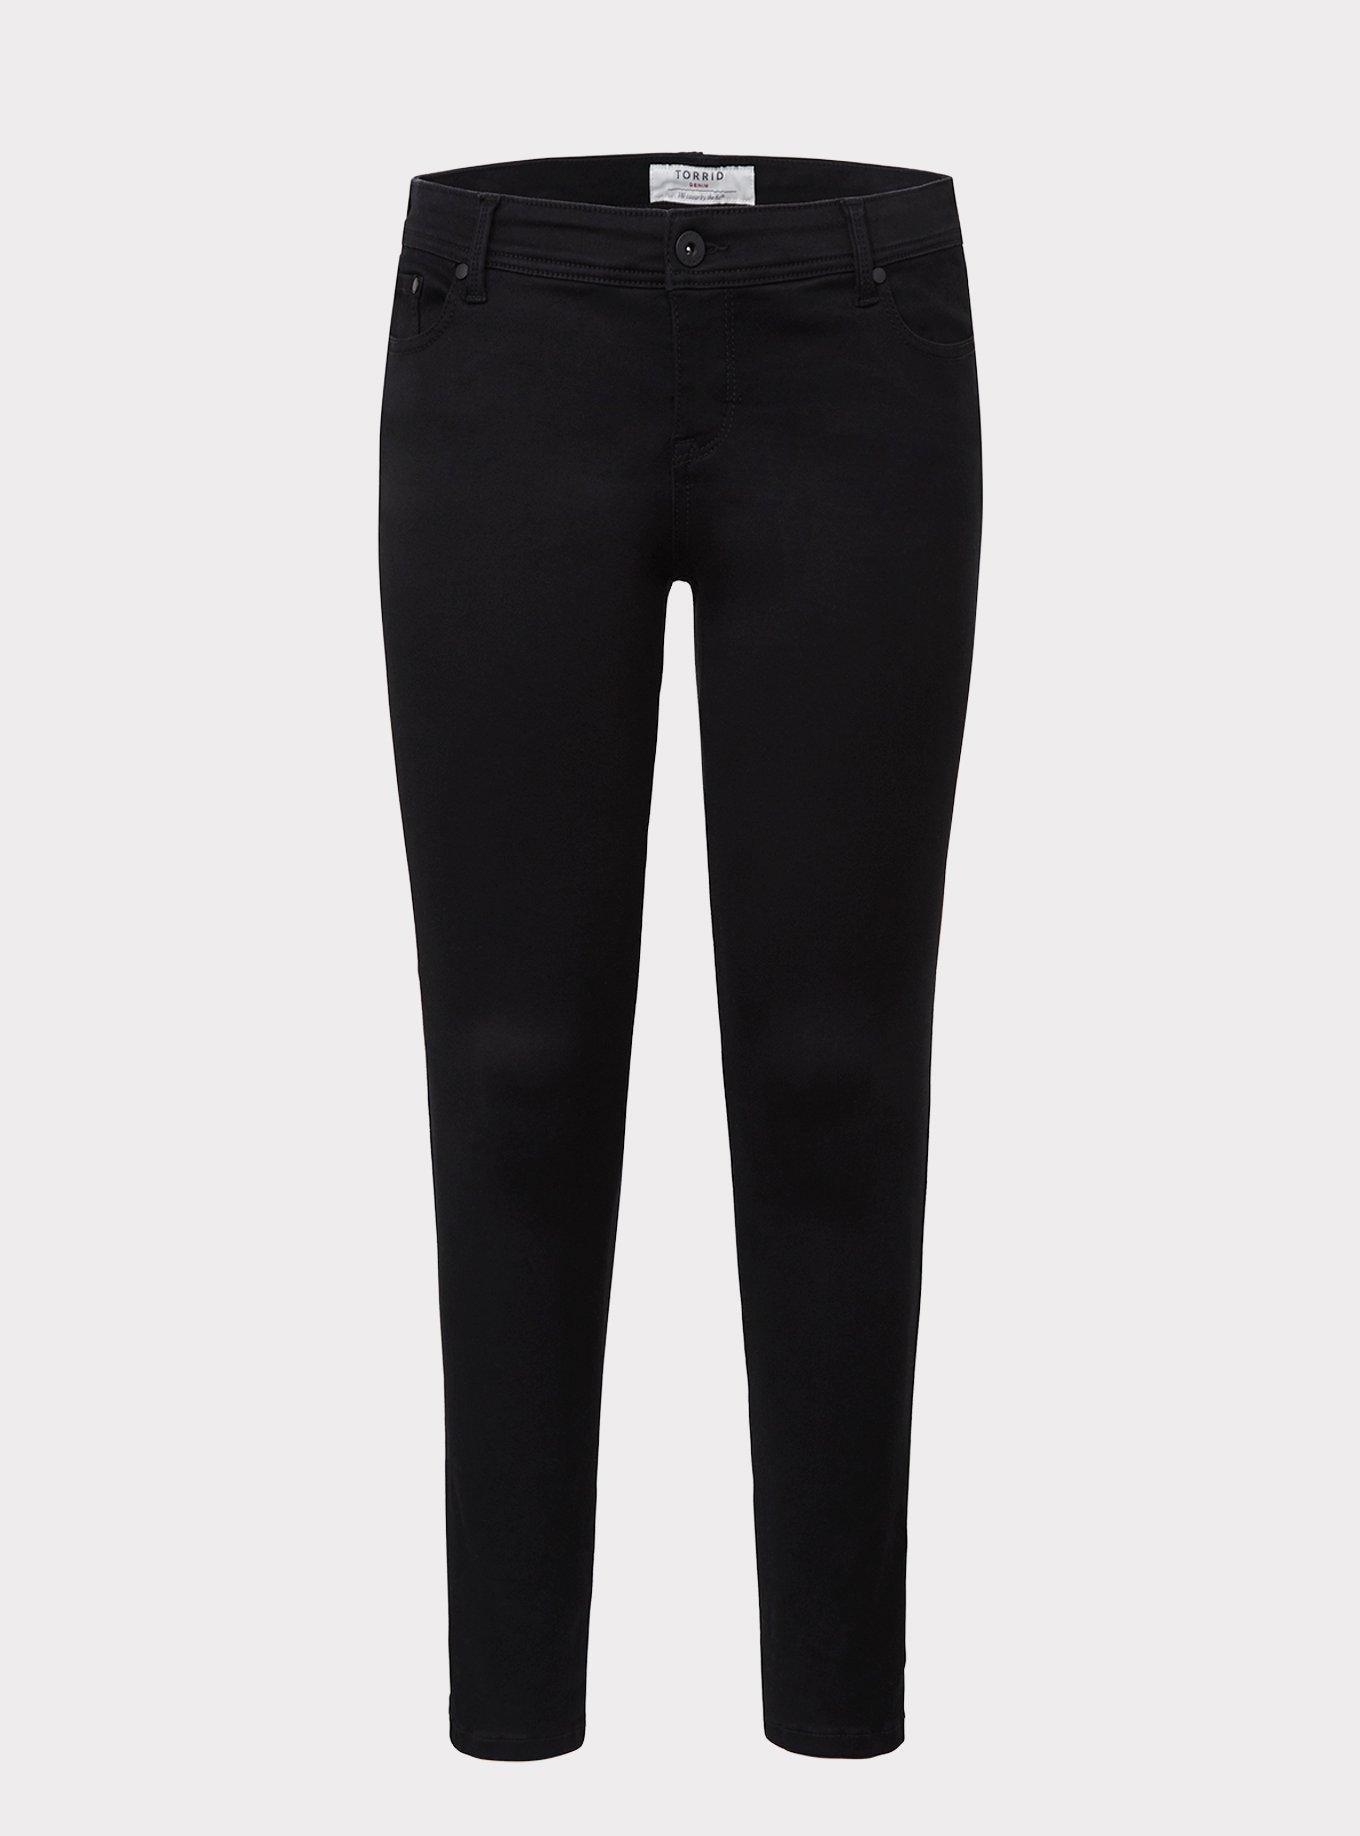 Plus Size - Luxe Skinny Jean - Sateen Stretch Black - Torrid